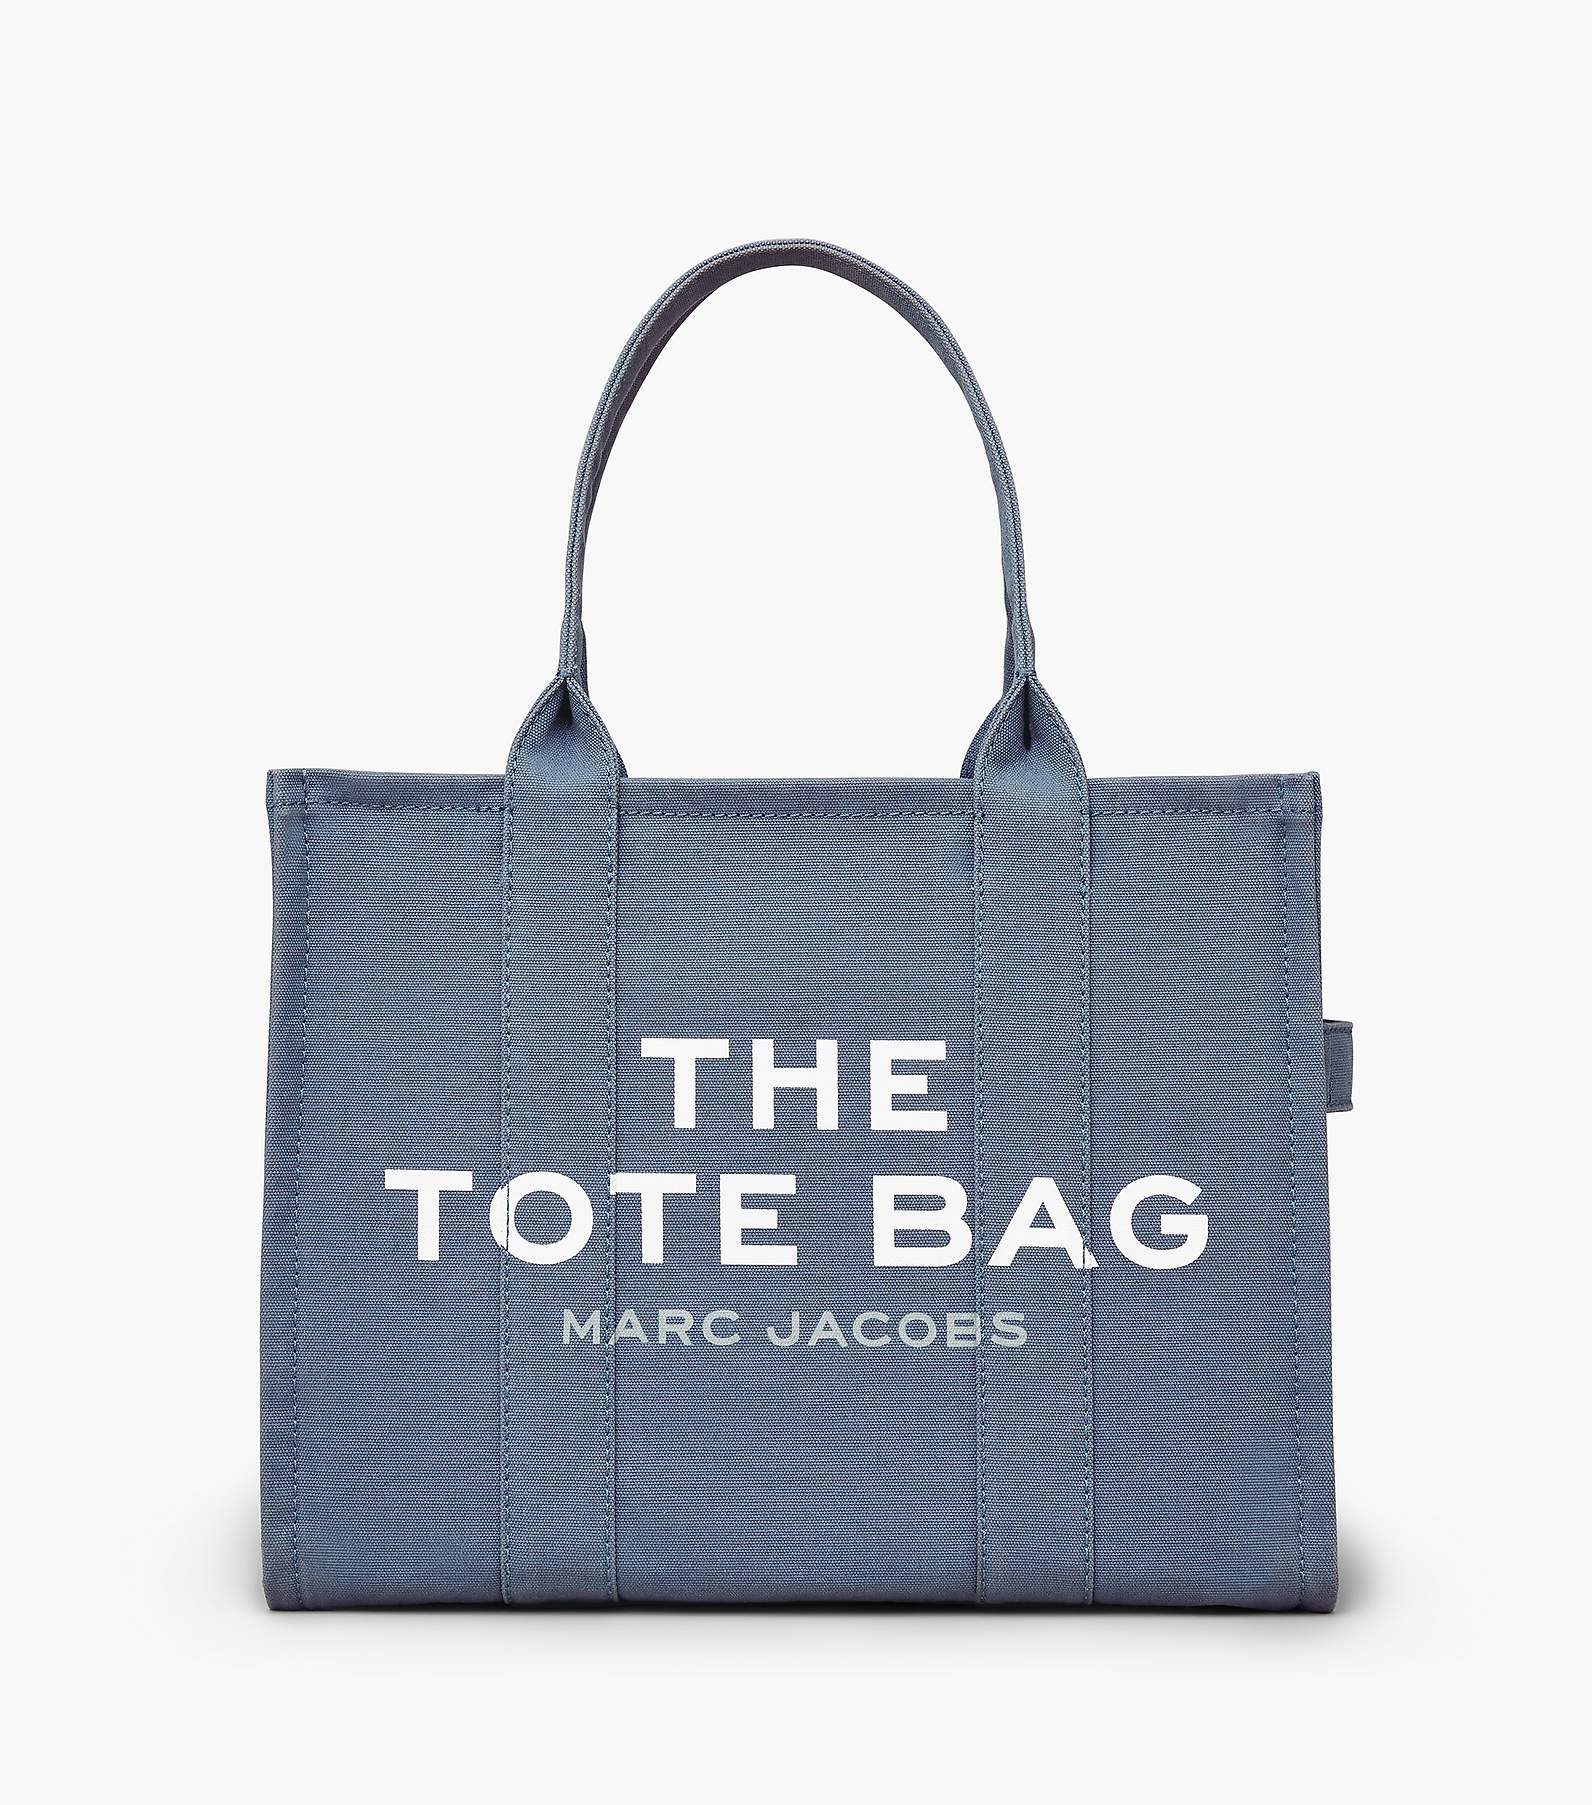 Handbags  Marc jacobs bag, Fashion, Bags